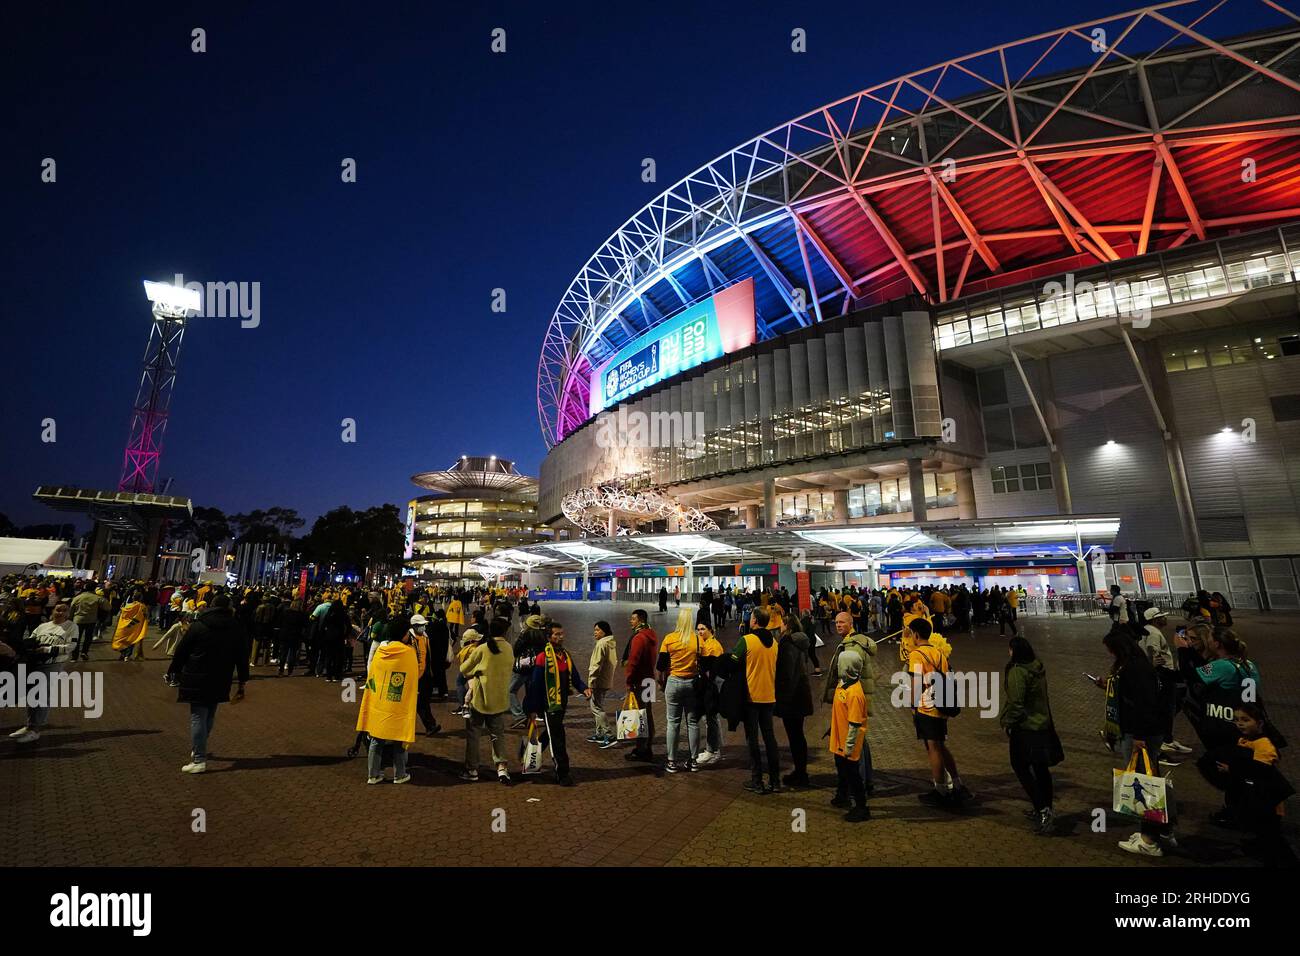 Die Fans warten vor dem Halbfinalspiel der FIFA Women's World Cup im Stadium Australia, Sydney, in der Schlange, um das Stadion zu betreten. Bilddatum: Mittwoch, 16. August 2023. Stockfoto